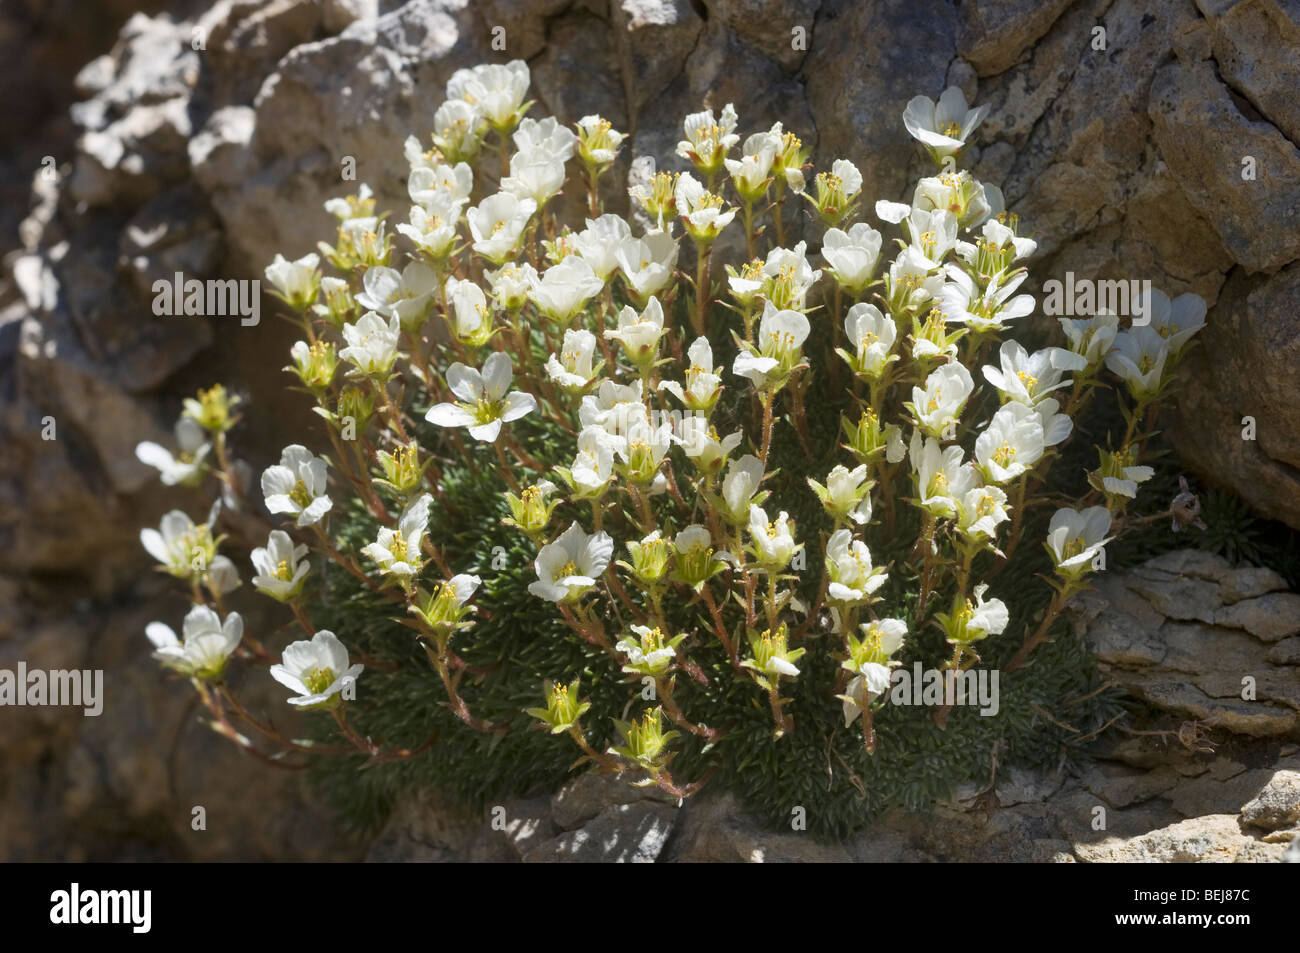 Saxifraga valdellii flowers, Bondone mountain, Trentino Alto Adige, Italy Stock Photo